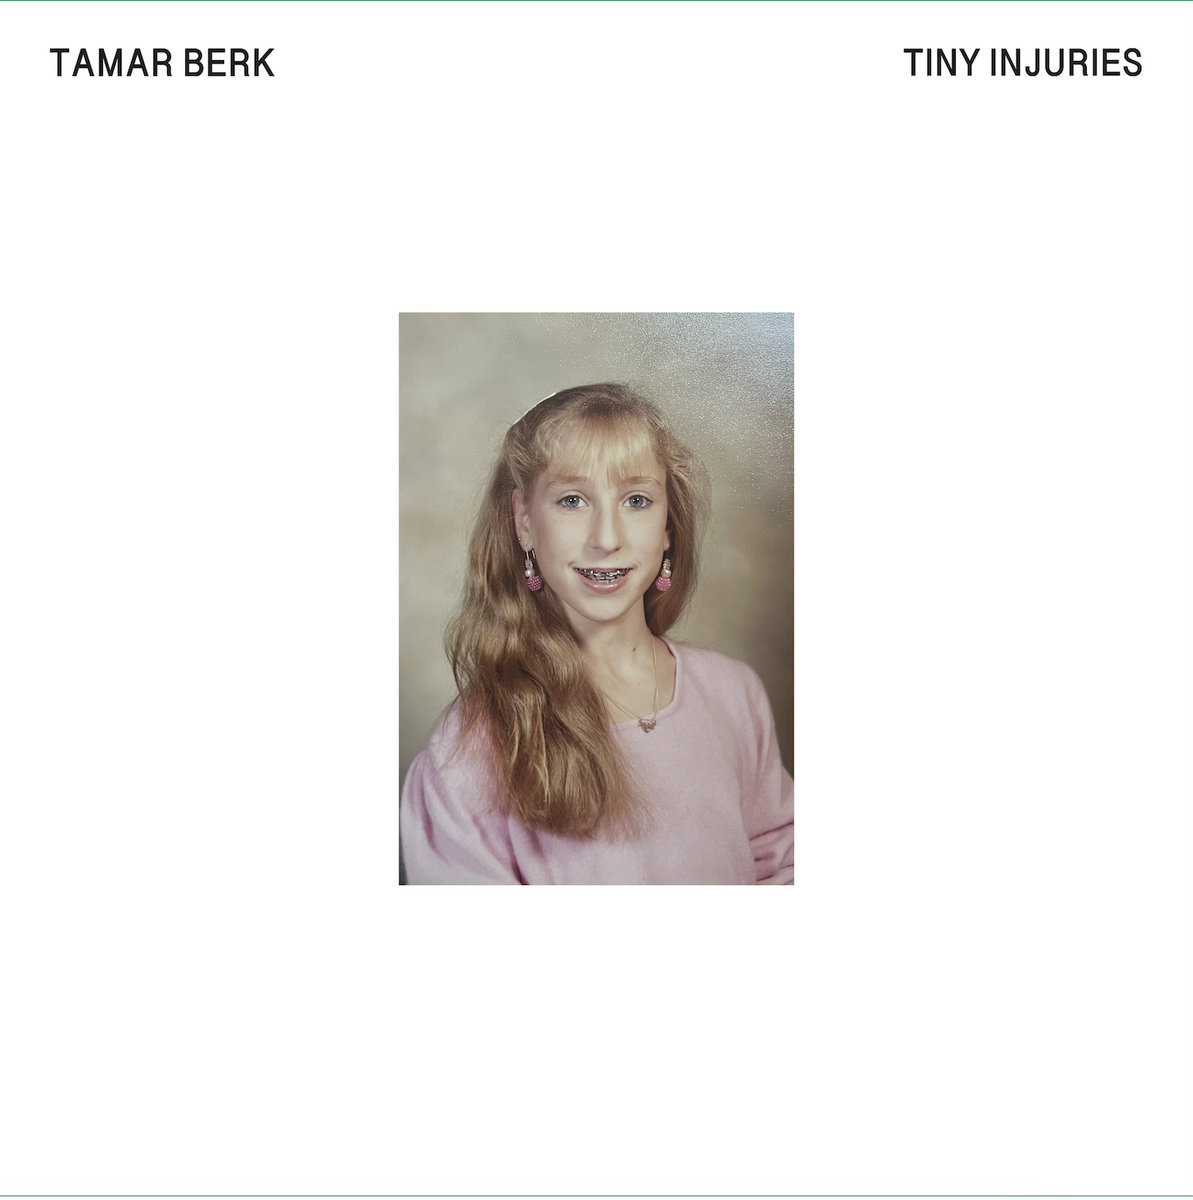 Tamar Berk ‘Tiny Injuries’ album artwork